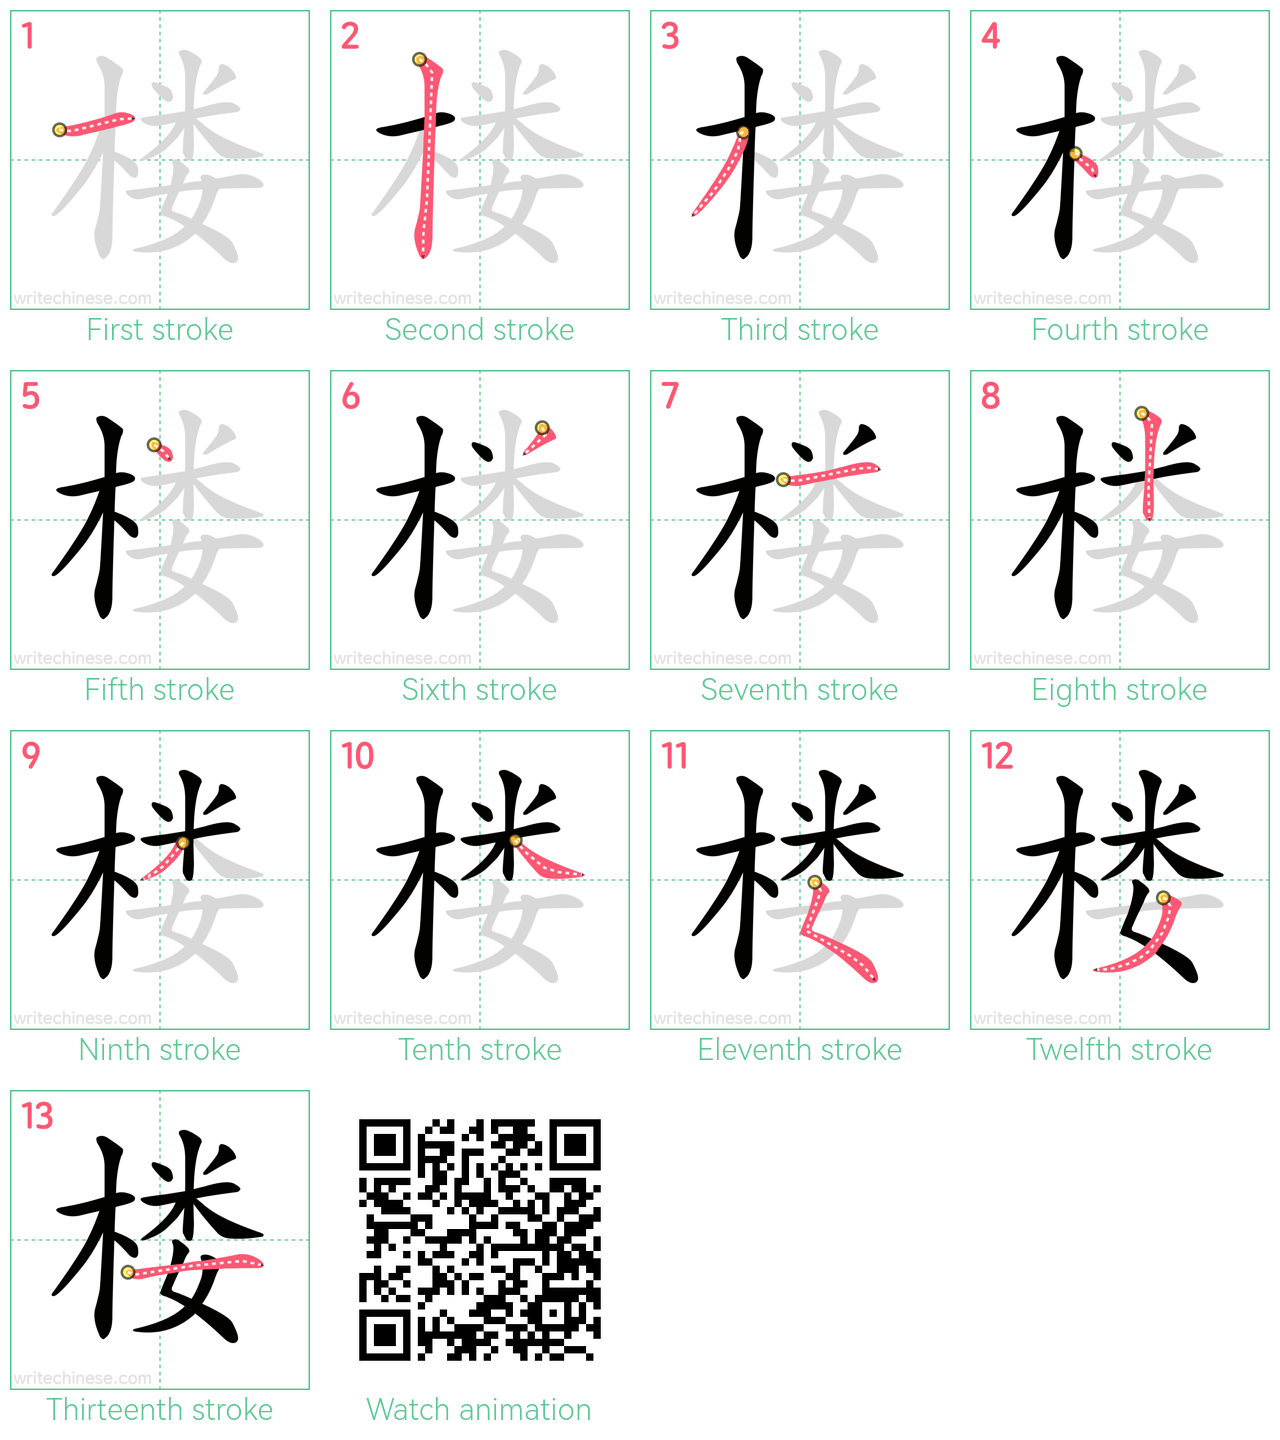 楼 step-by-step stroke order diagrams